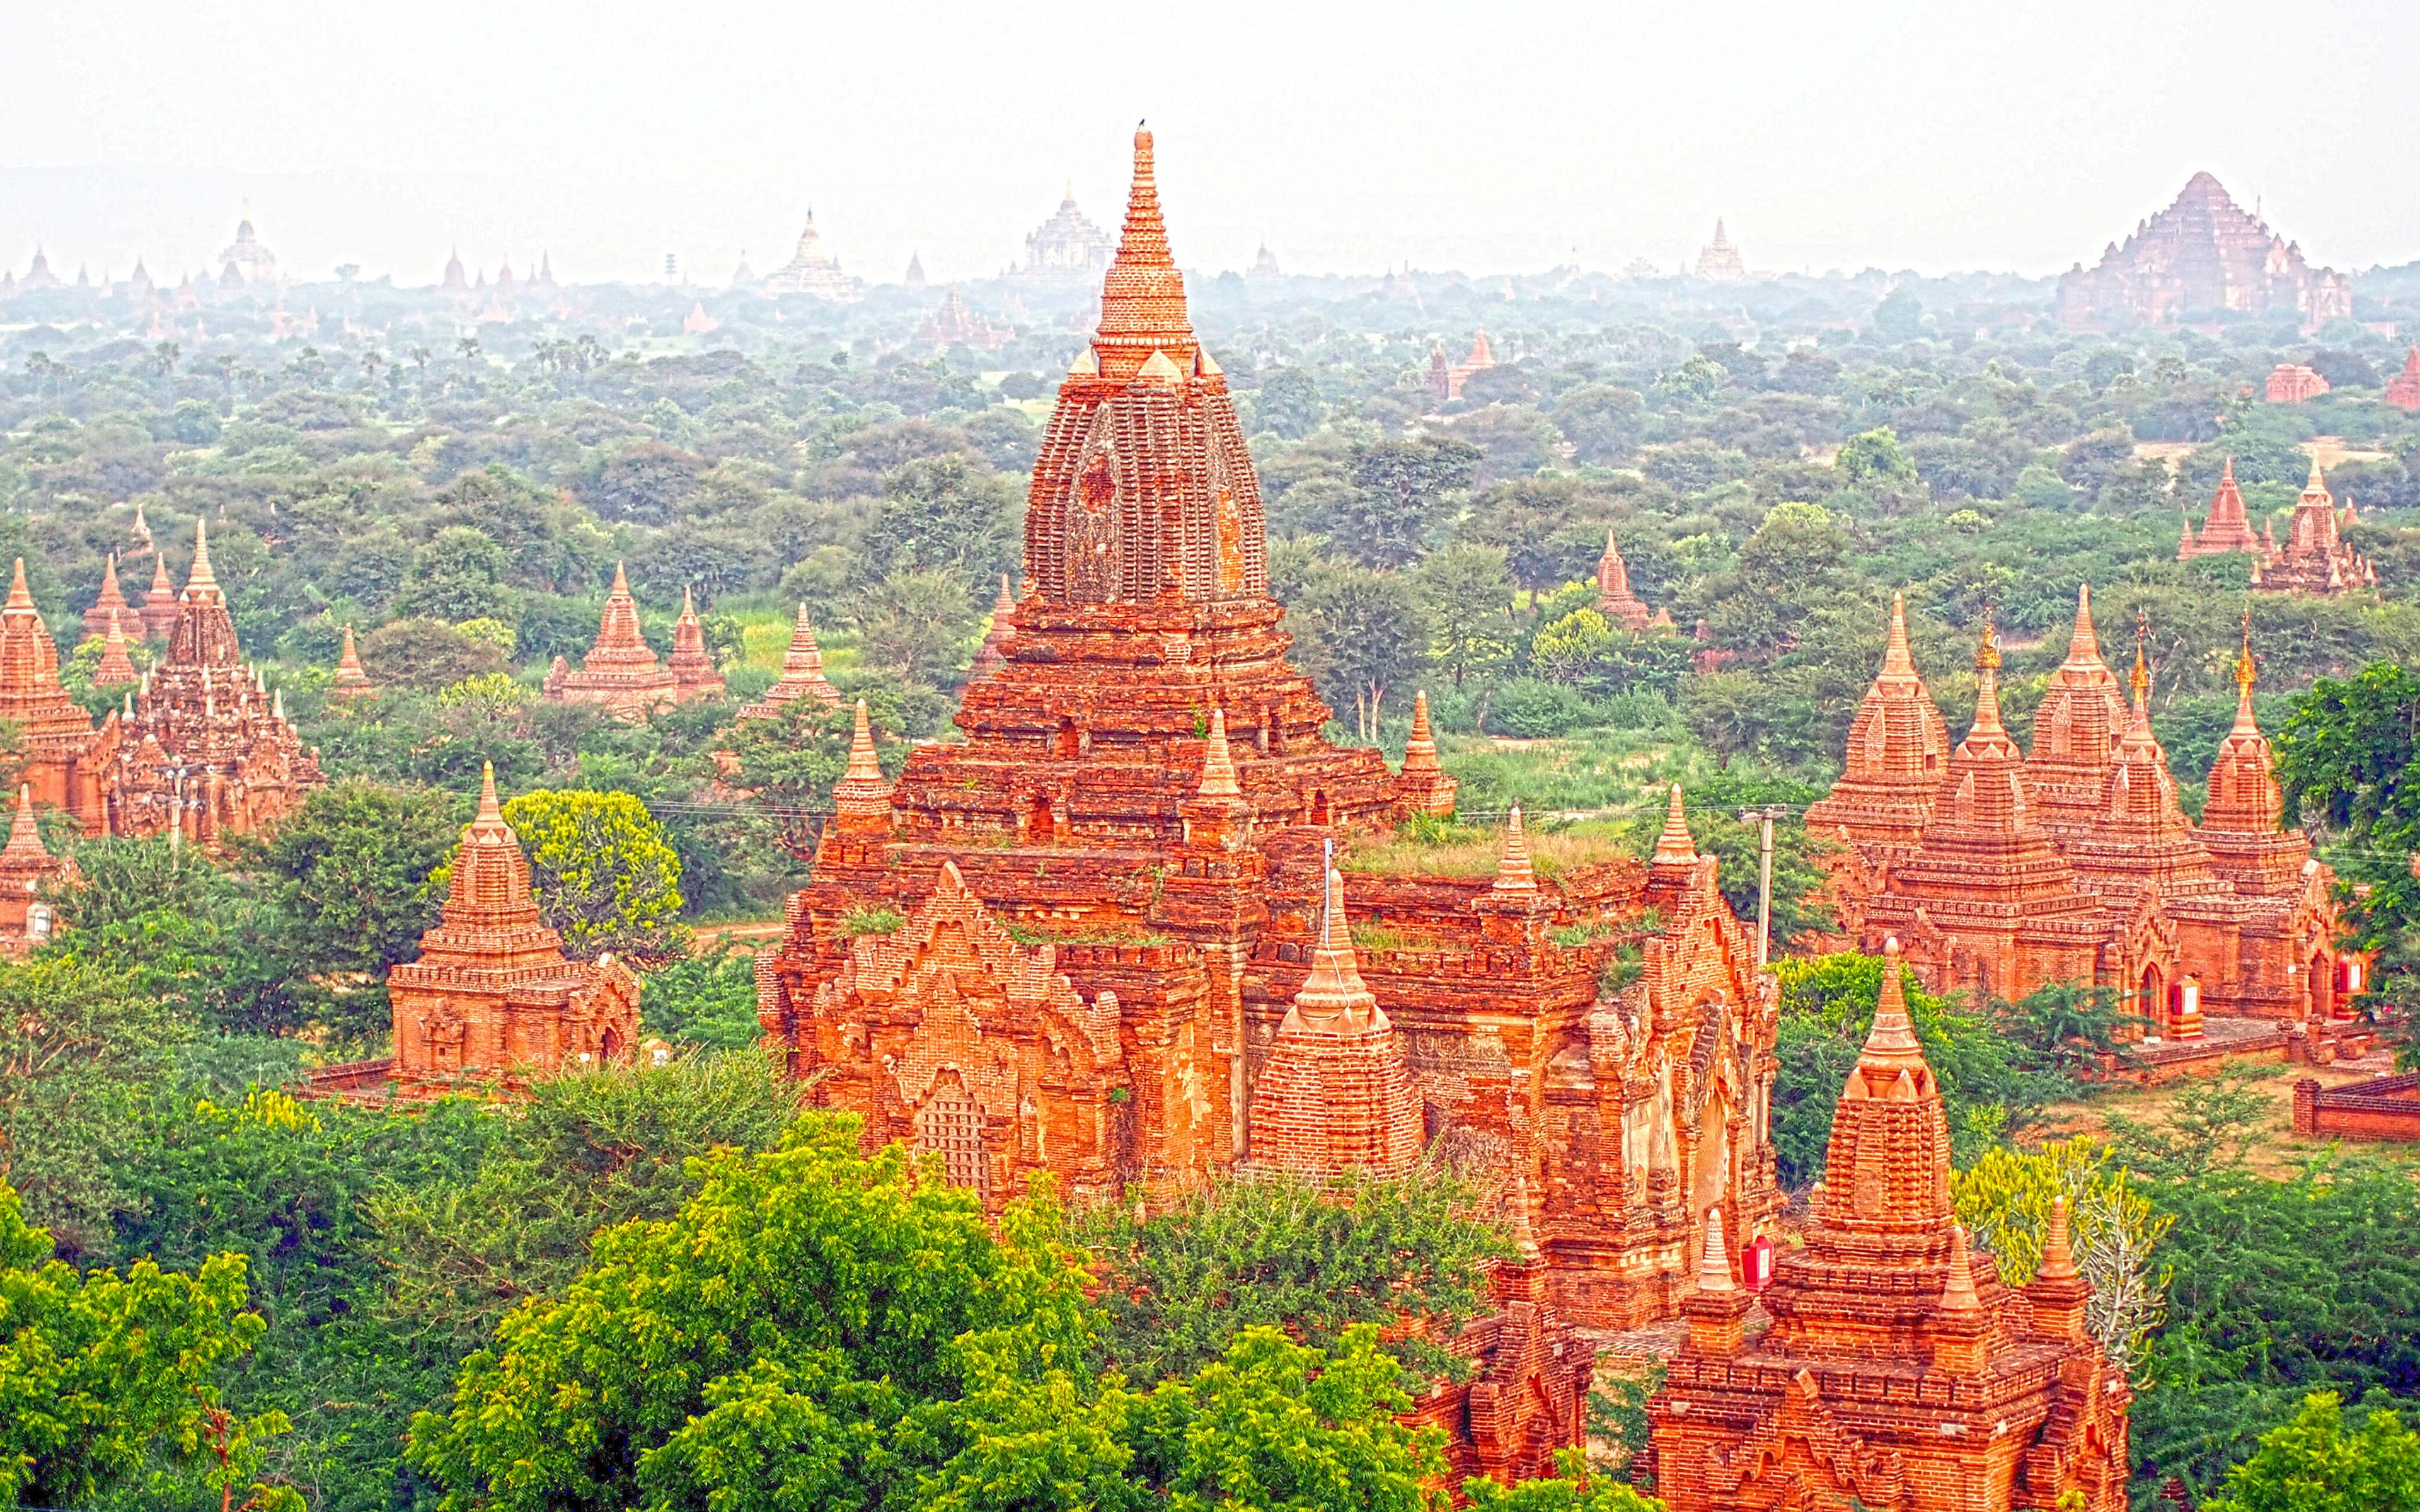 Download wallpaper Bagan, 4k, temples, ancient city, Burma, Myanmar